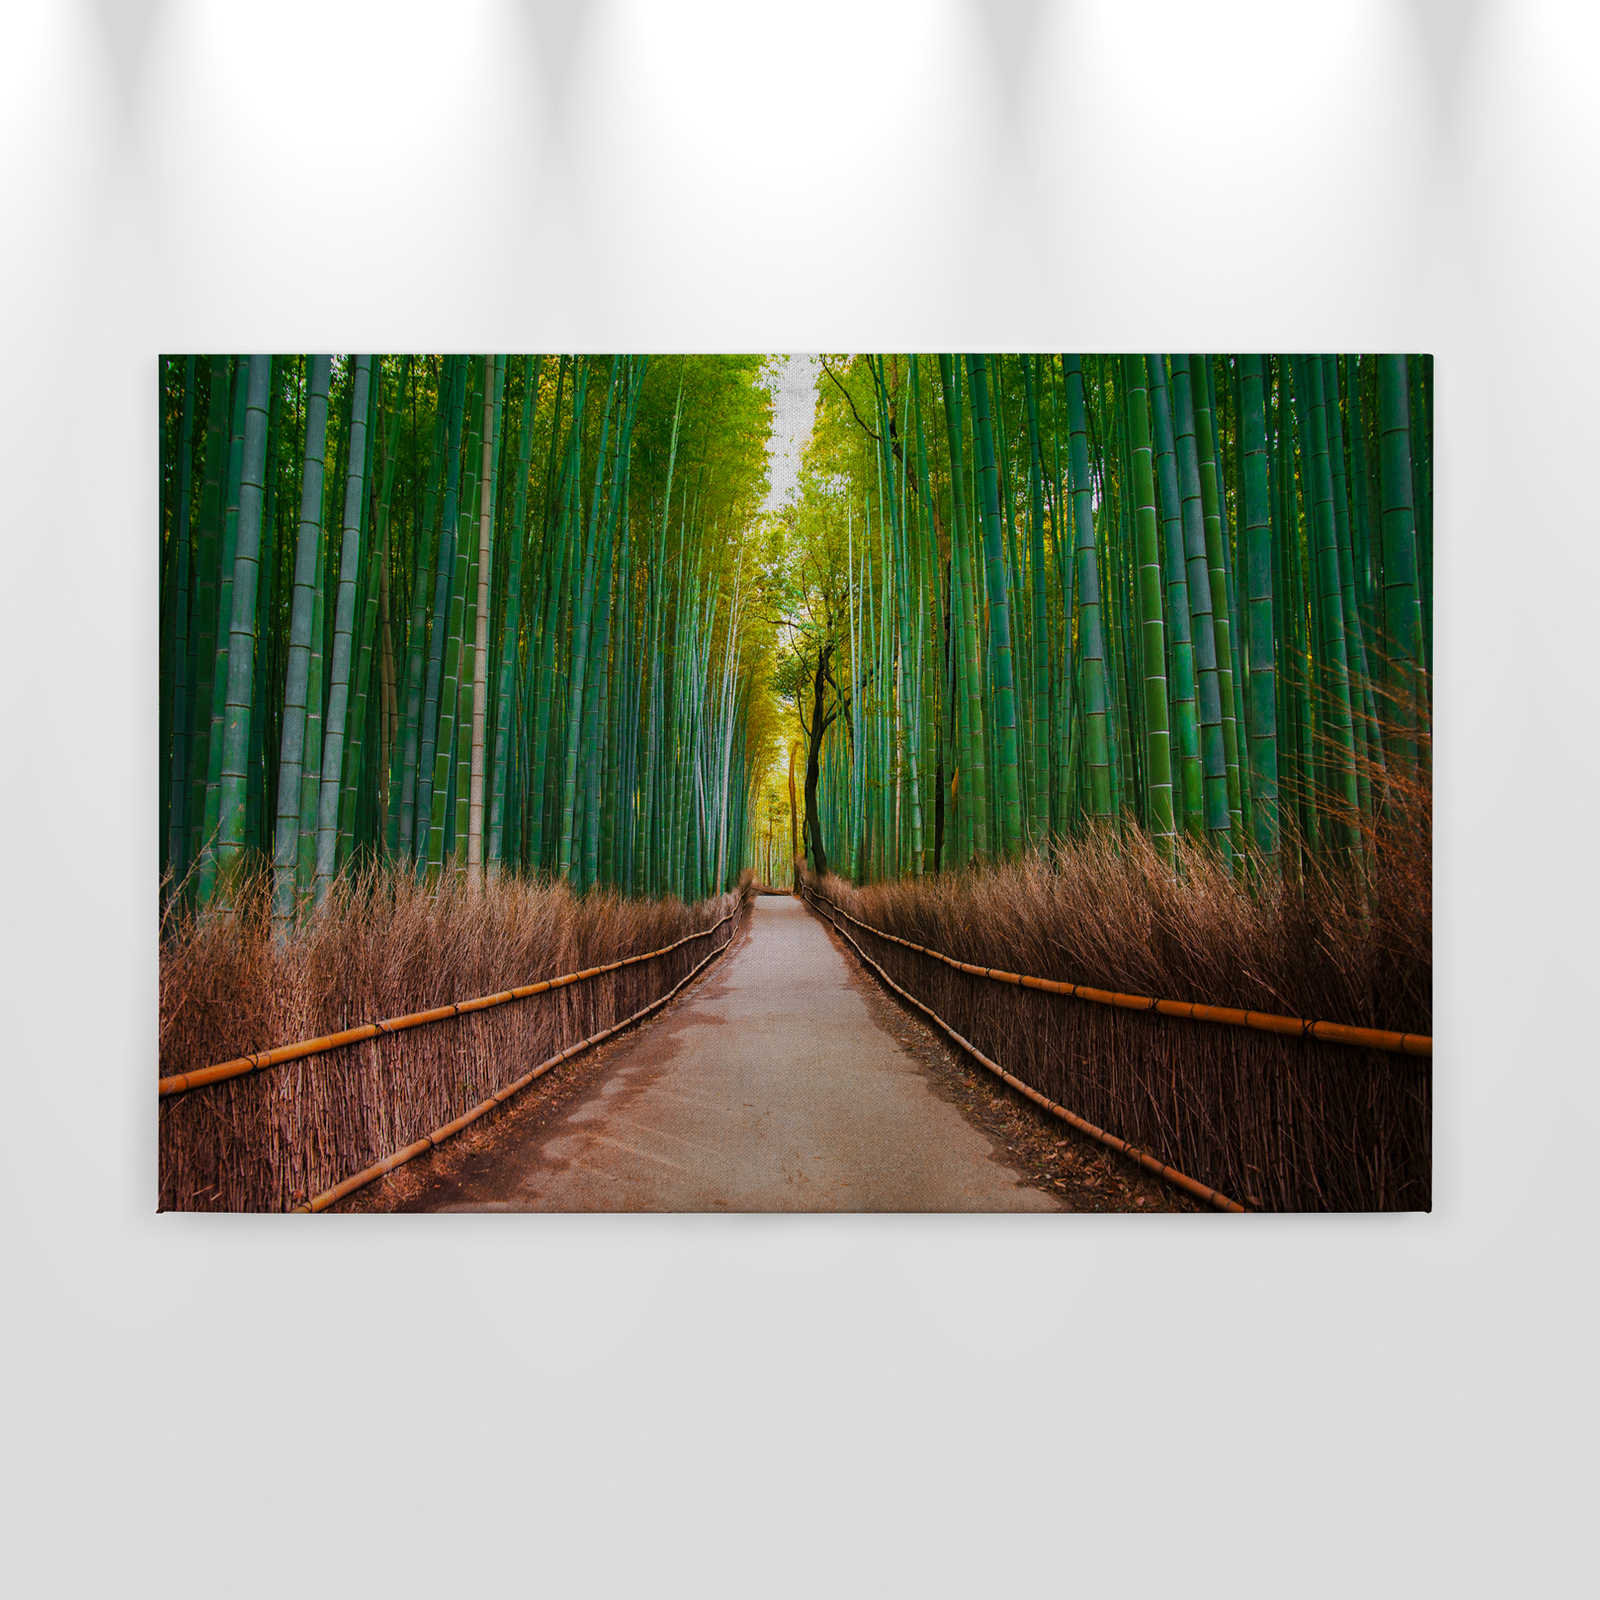             Lienzo con camino de bambú natural - 0,90 m x 0,60 m
        